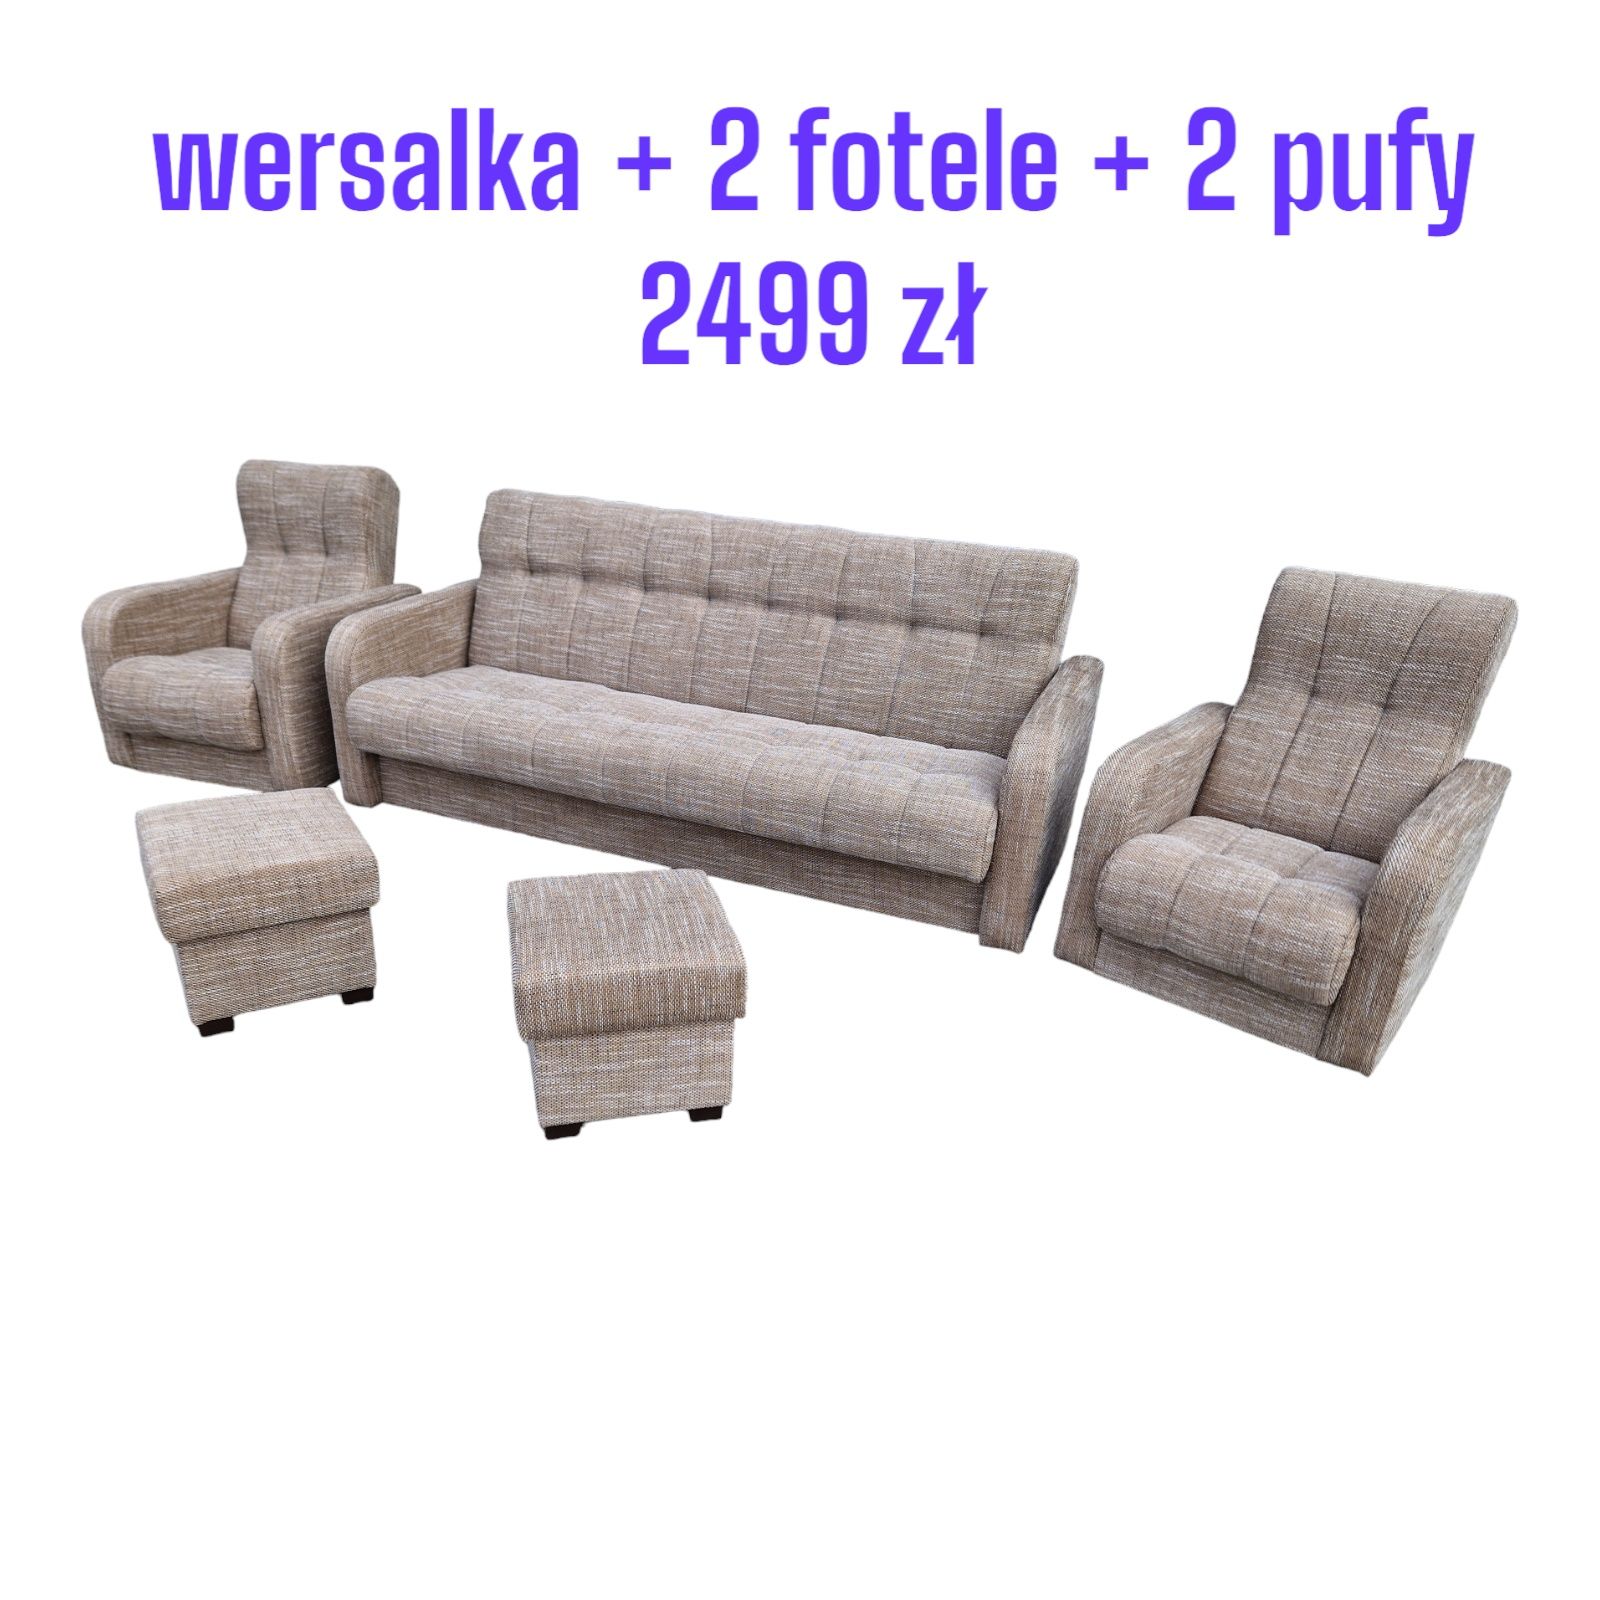 Zestaw wypoczynkowy: wersalka+2 fotele+ 2 pufy REMEK, dostawa cała PL